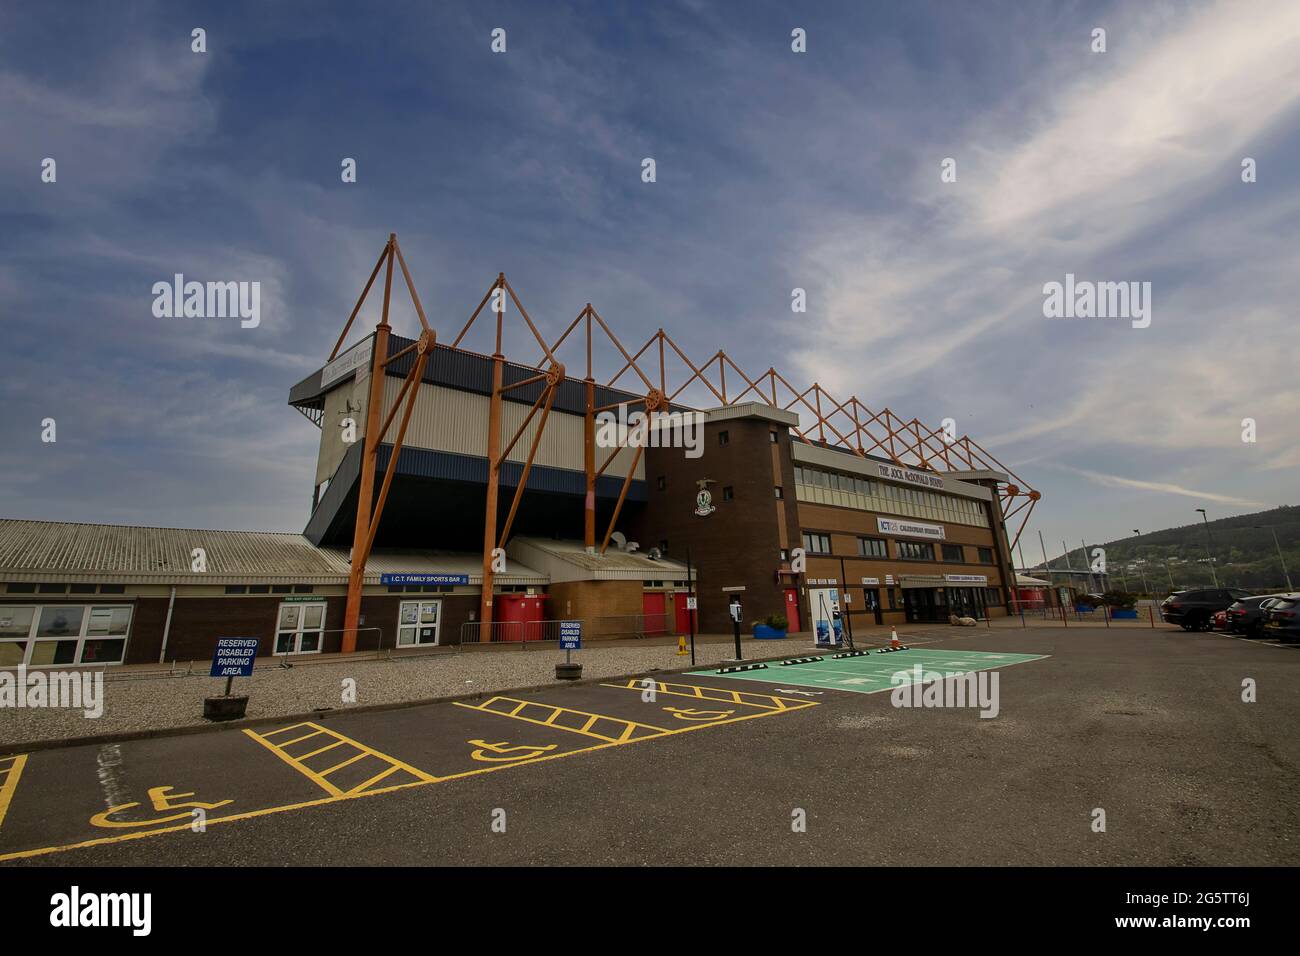 Le Caledonian Stadium accueille le club de football de Inverness Caledonian Thistle, dans les Highlands écossais, au Royaume-Uni Banque D'Images